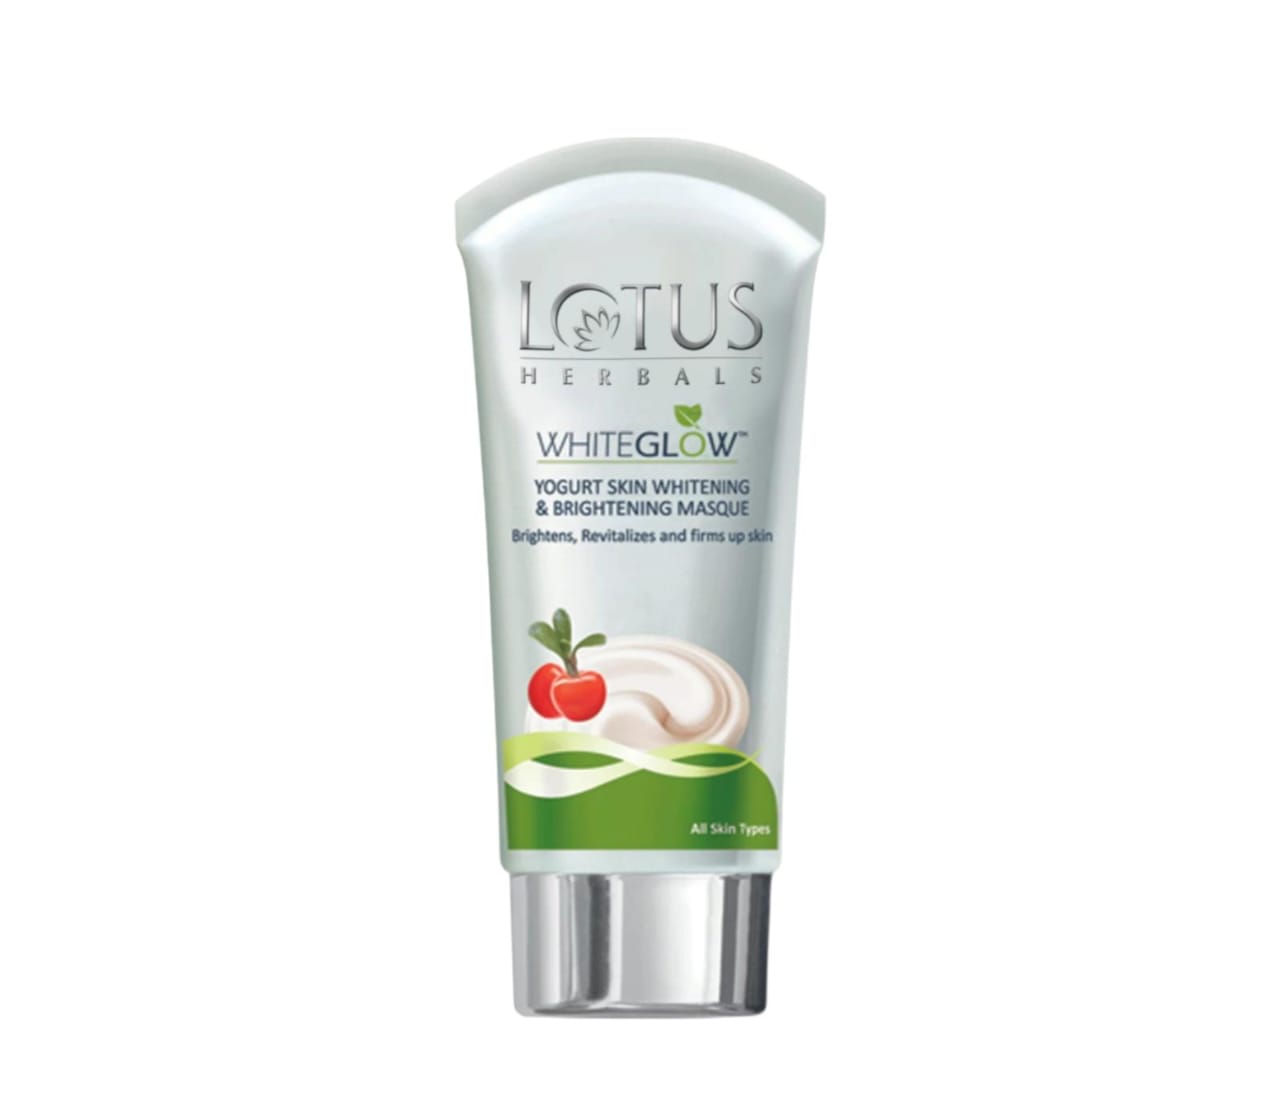 Lotus Herbals Hebals Whiteglow yogurt Skin Whitening And Brightening Masque